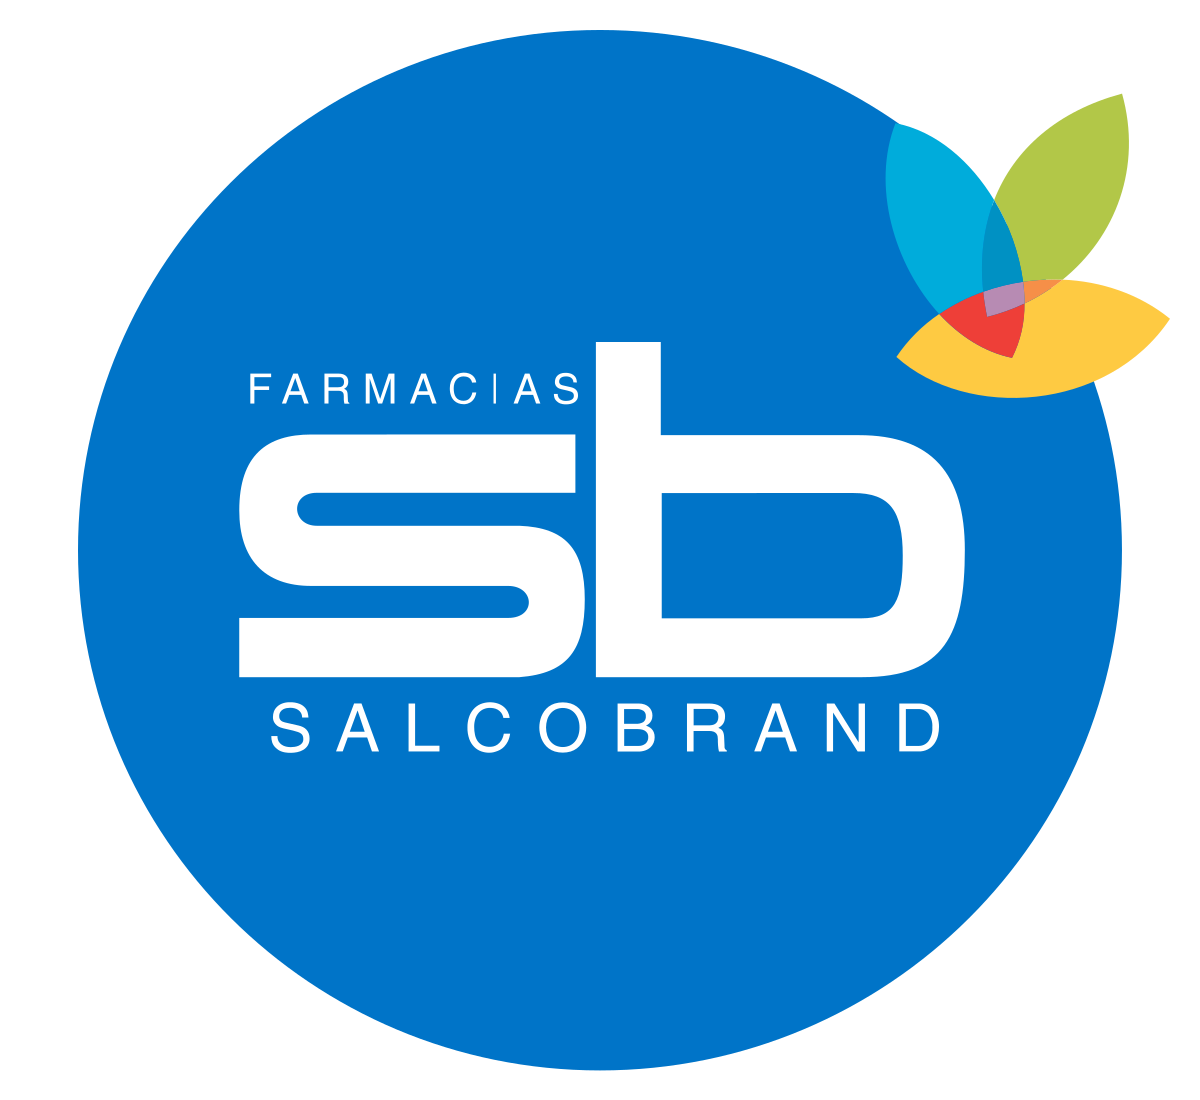 Farmacias Salcobrand